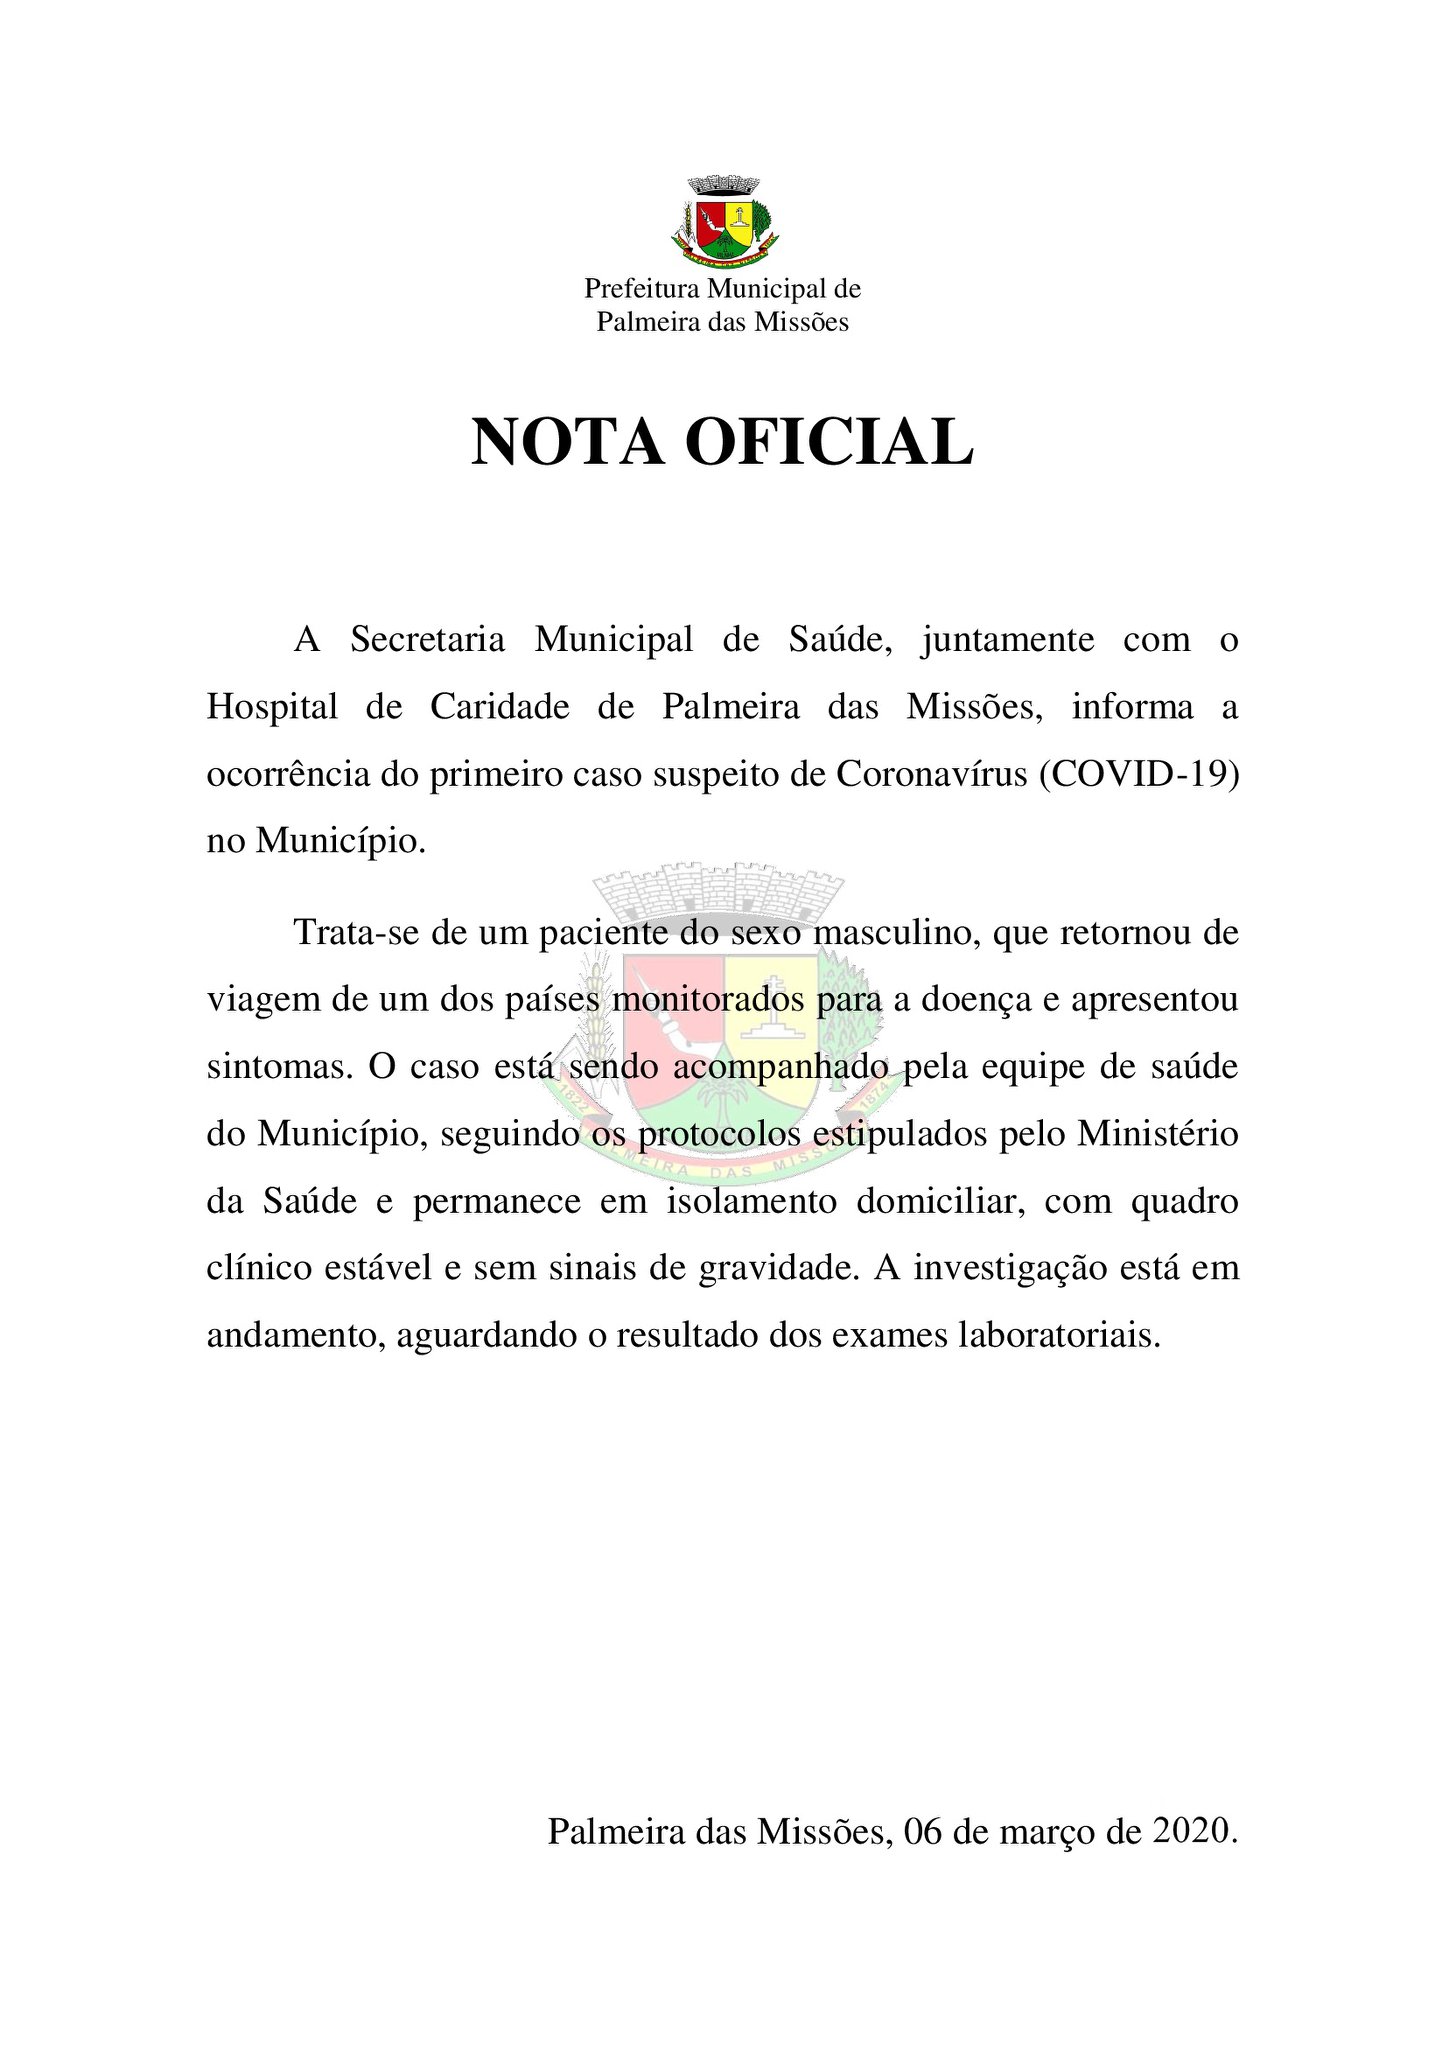 Secretaria Municipal de Saúde divulga Nota Oficial sobre caso suspeito de Coronavírus em Palmeira das Missões.